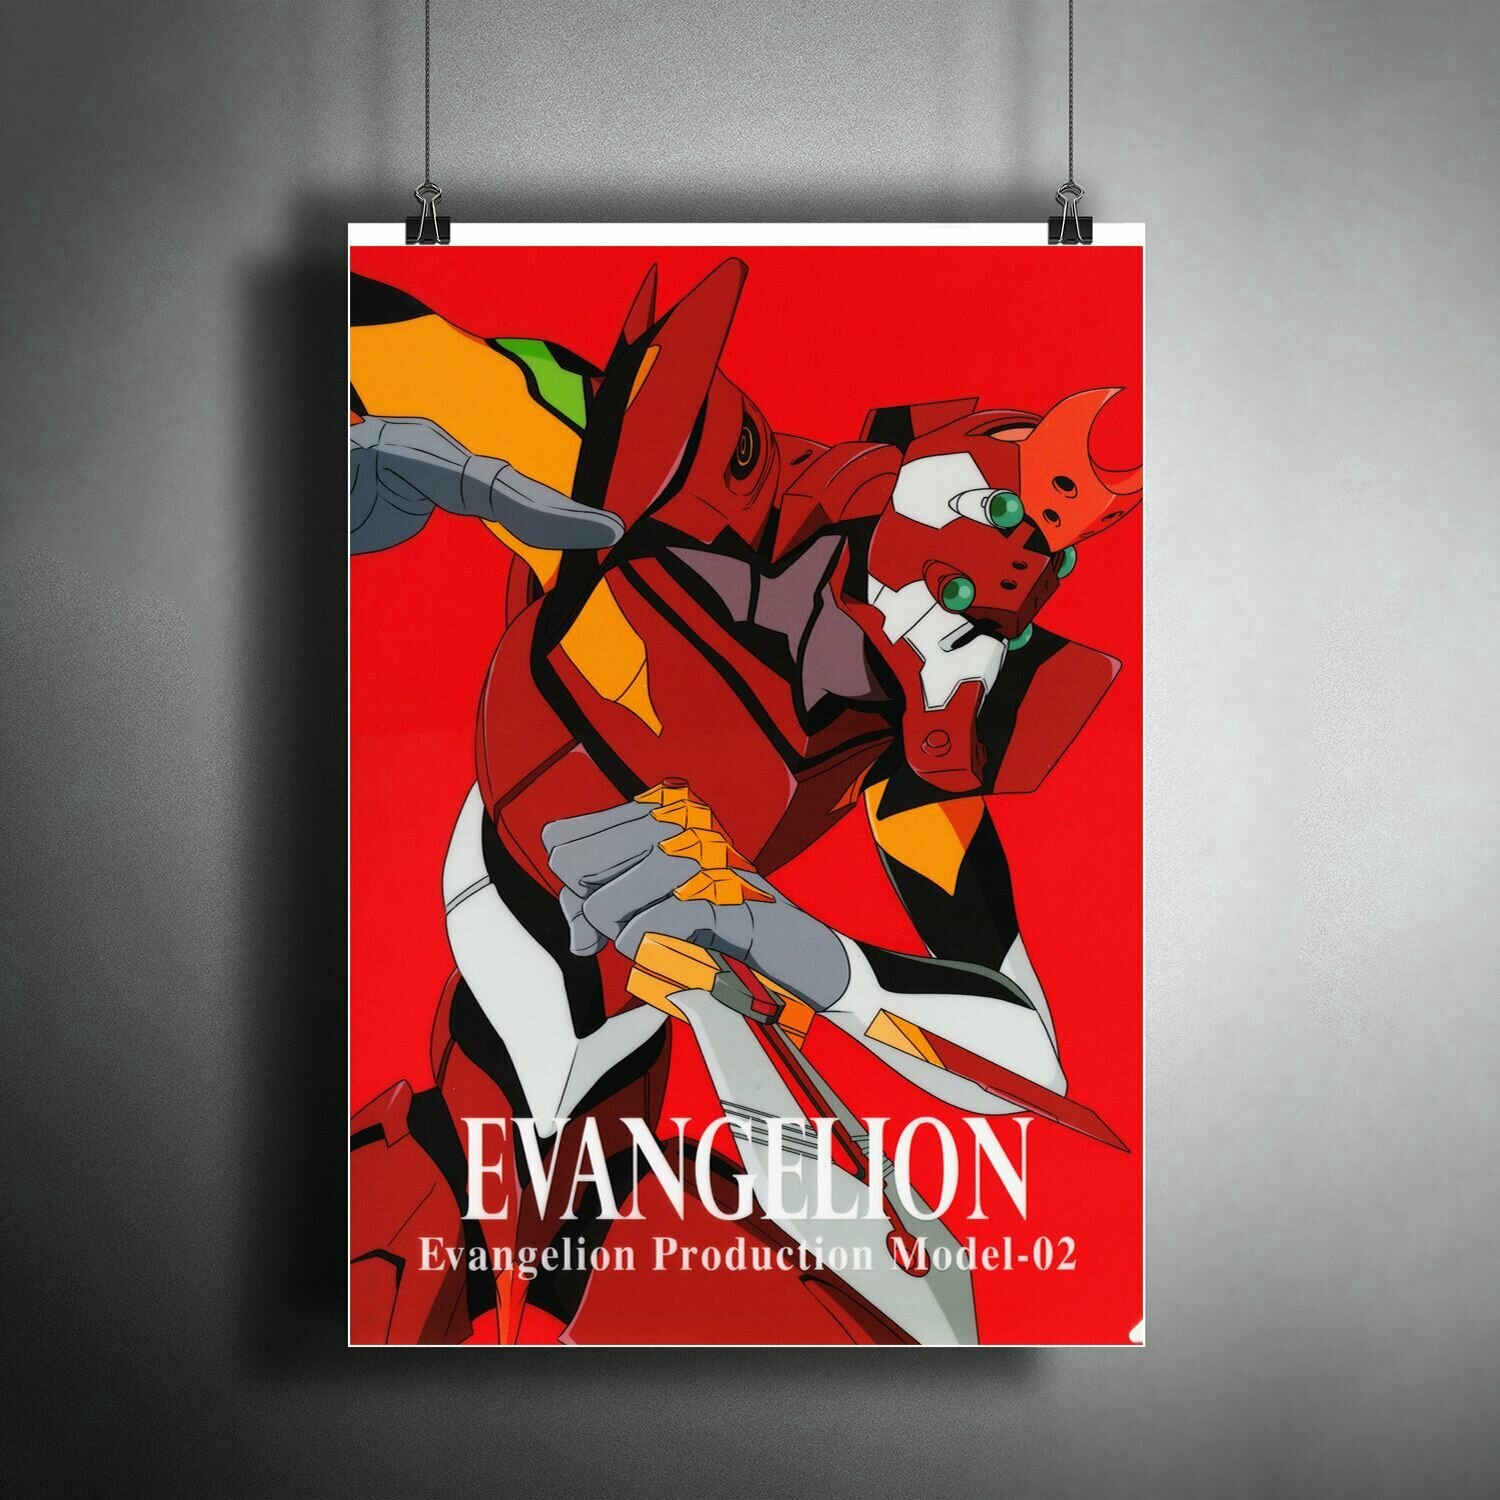 Постер для интерьера: аниме Евангелион / A3 (297x420 мм)